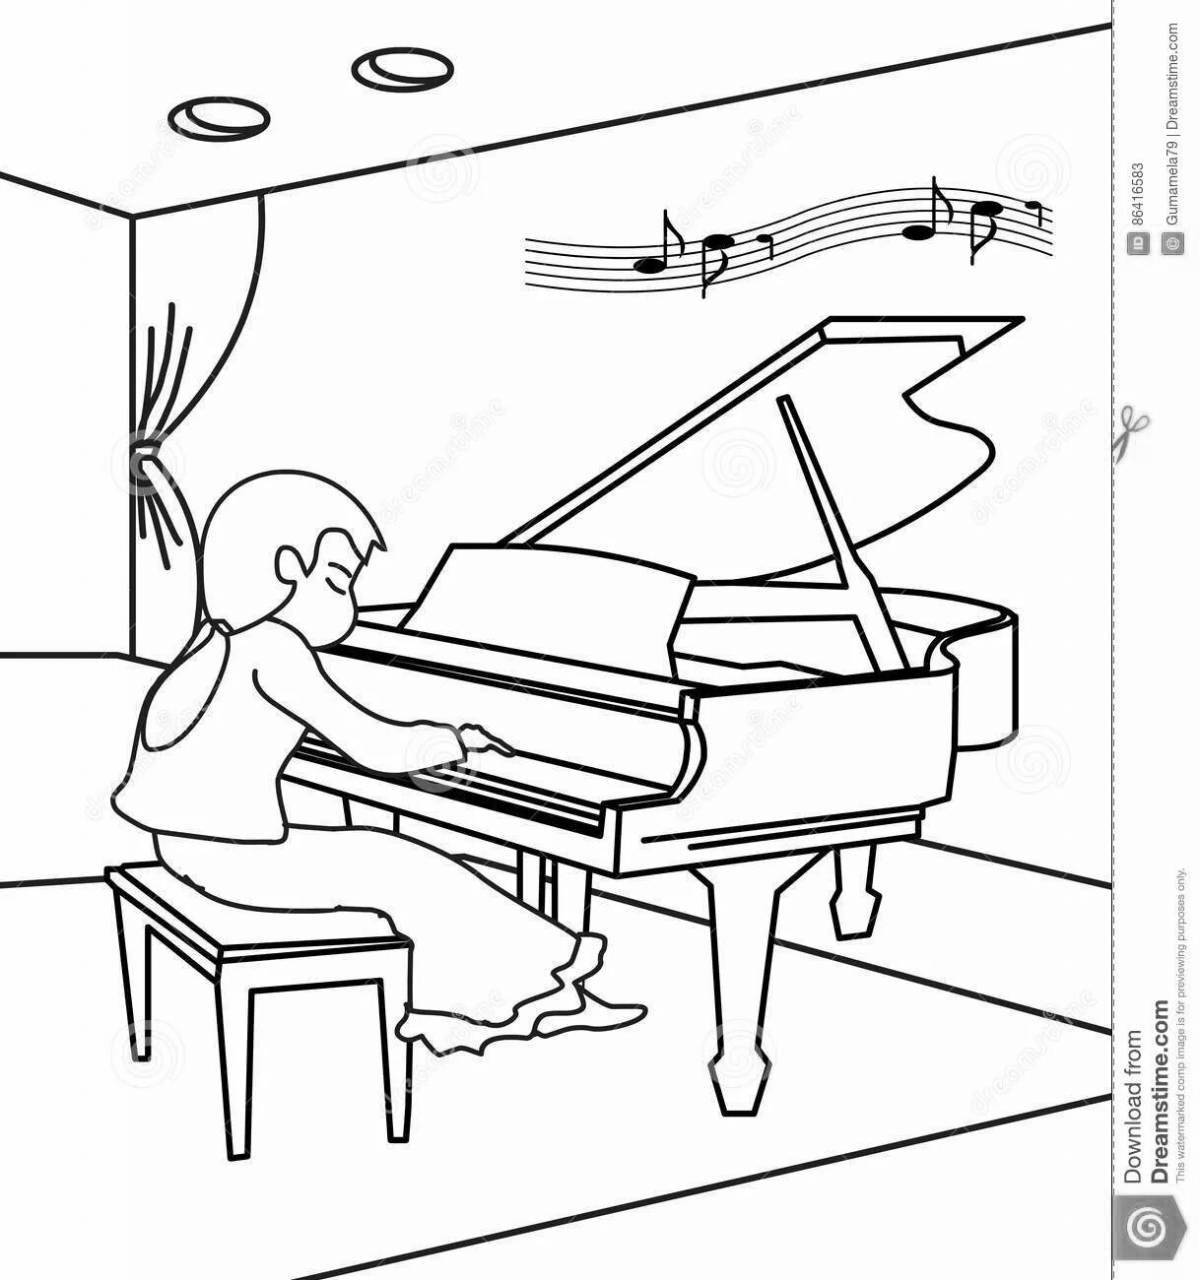 Children's piano #13